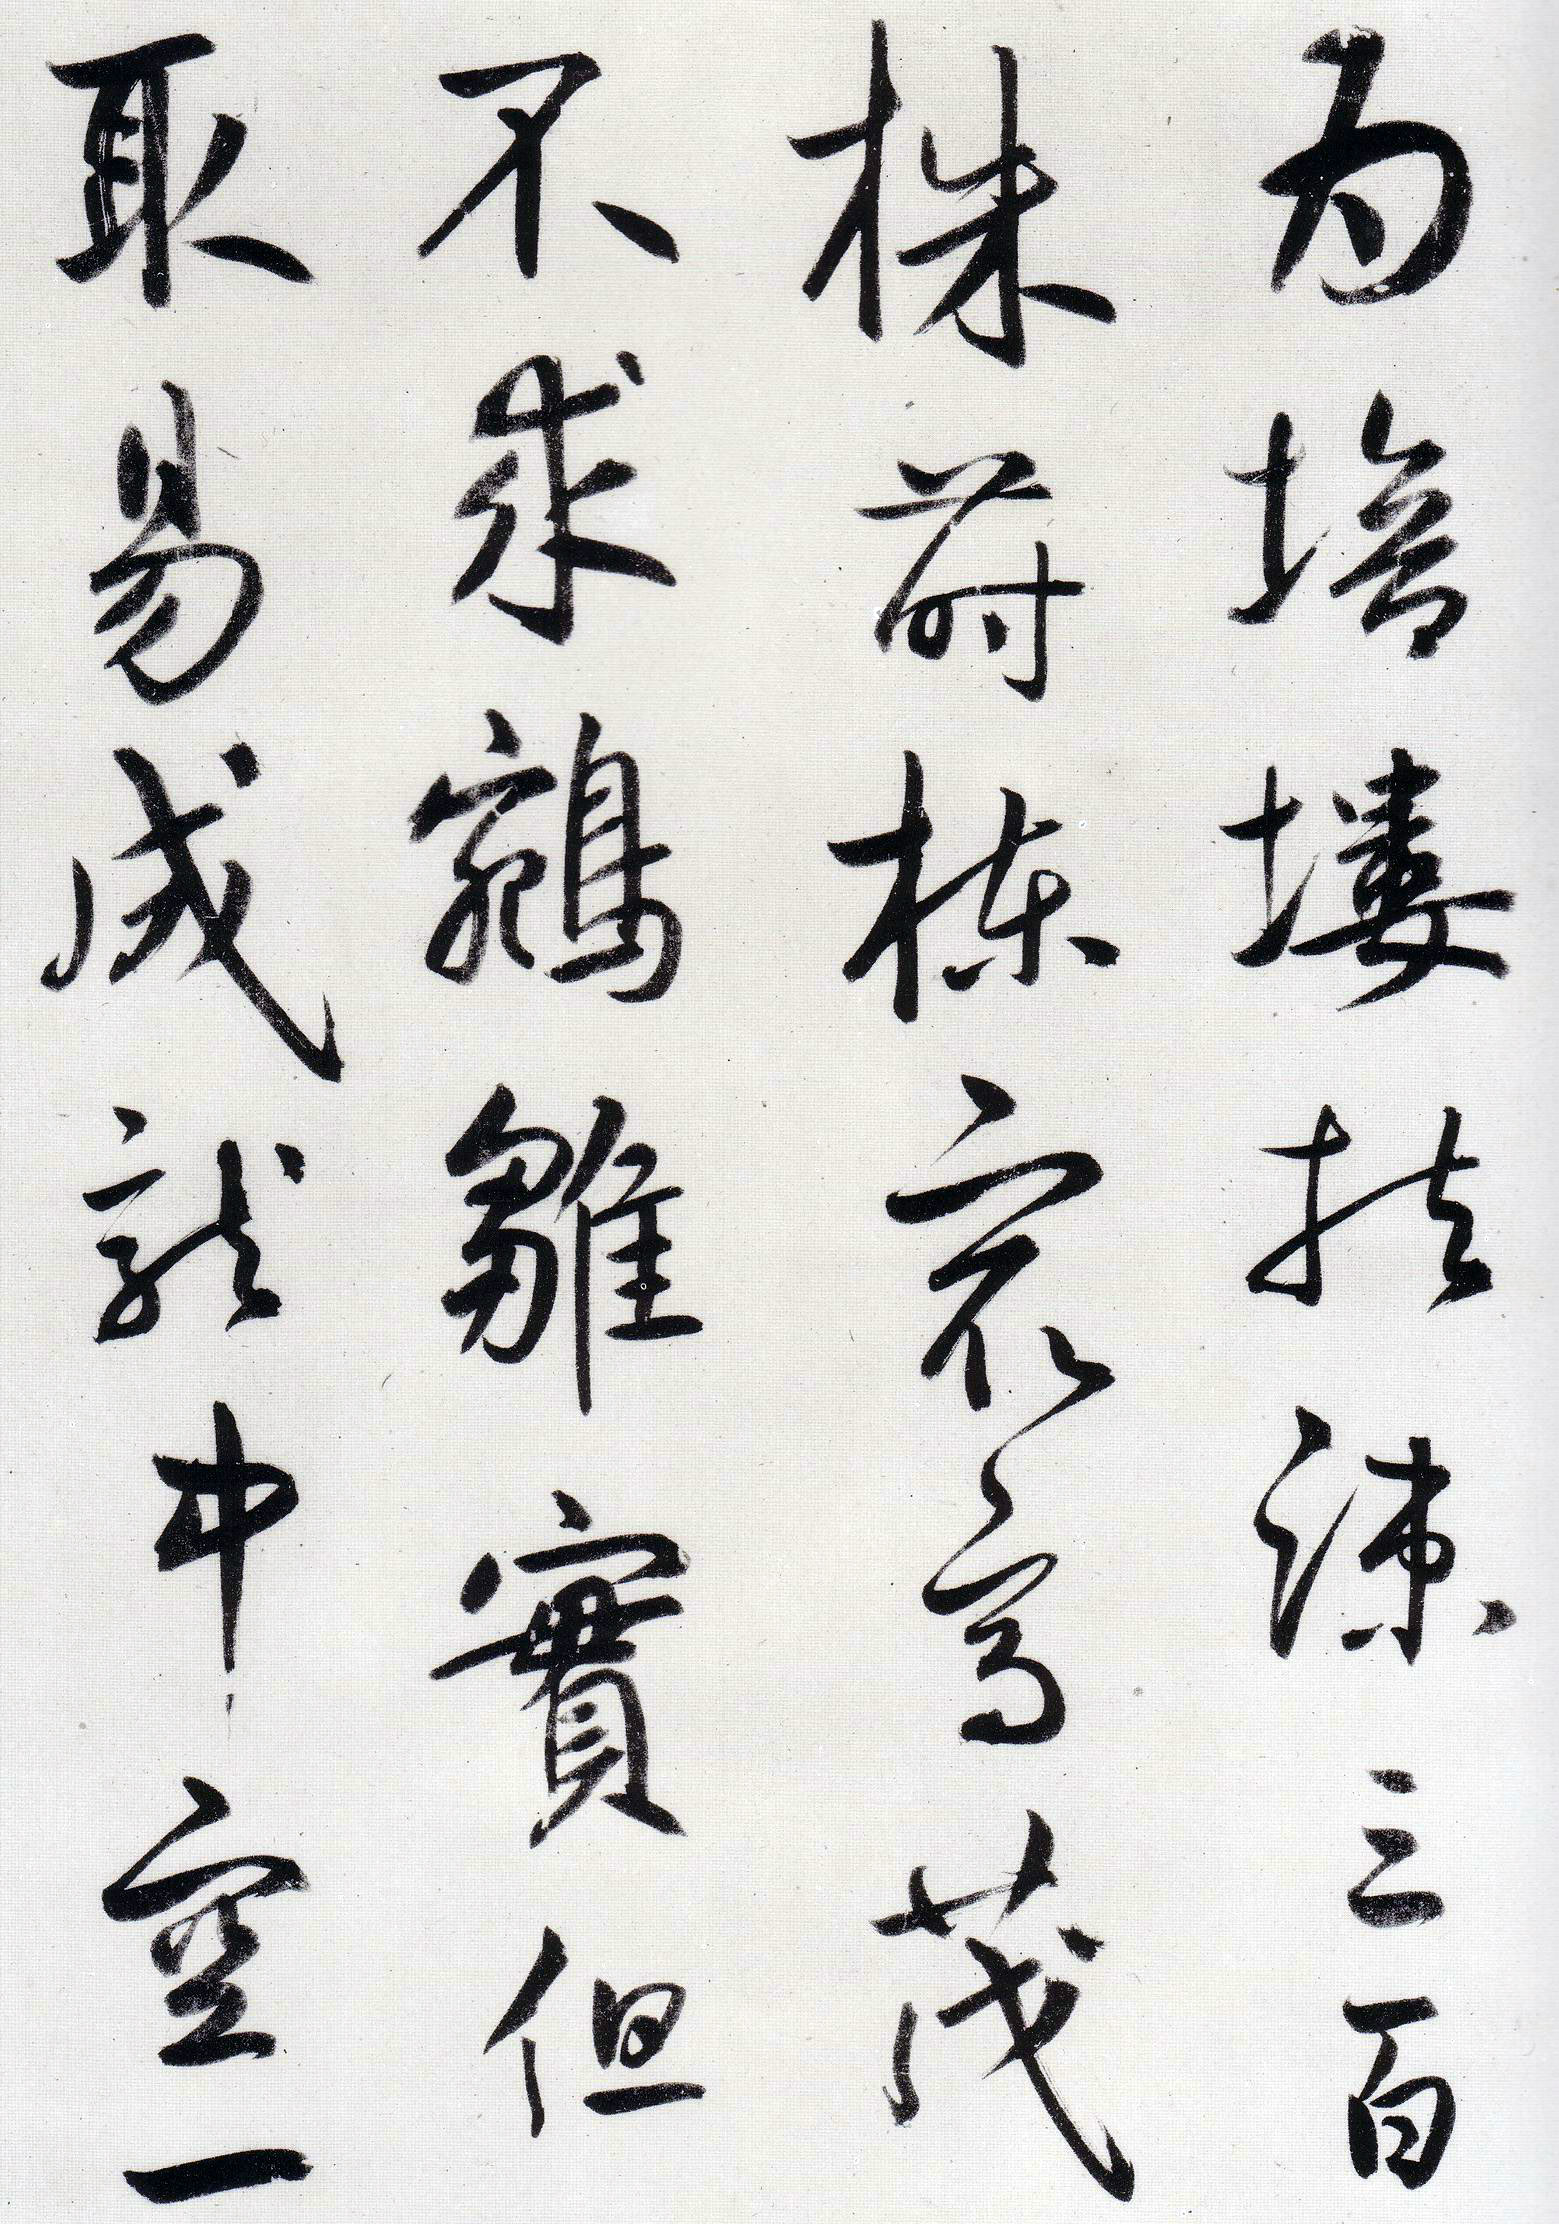 鲜于枢《王安石杂诗卷》-辽宁博物馆藏(图19)